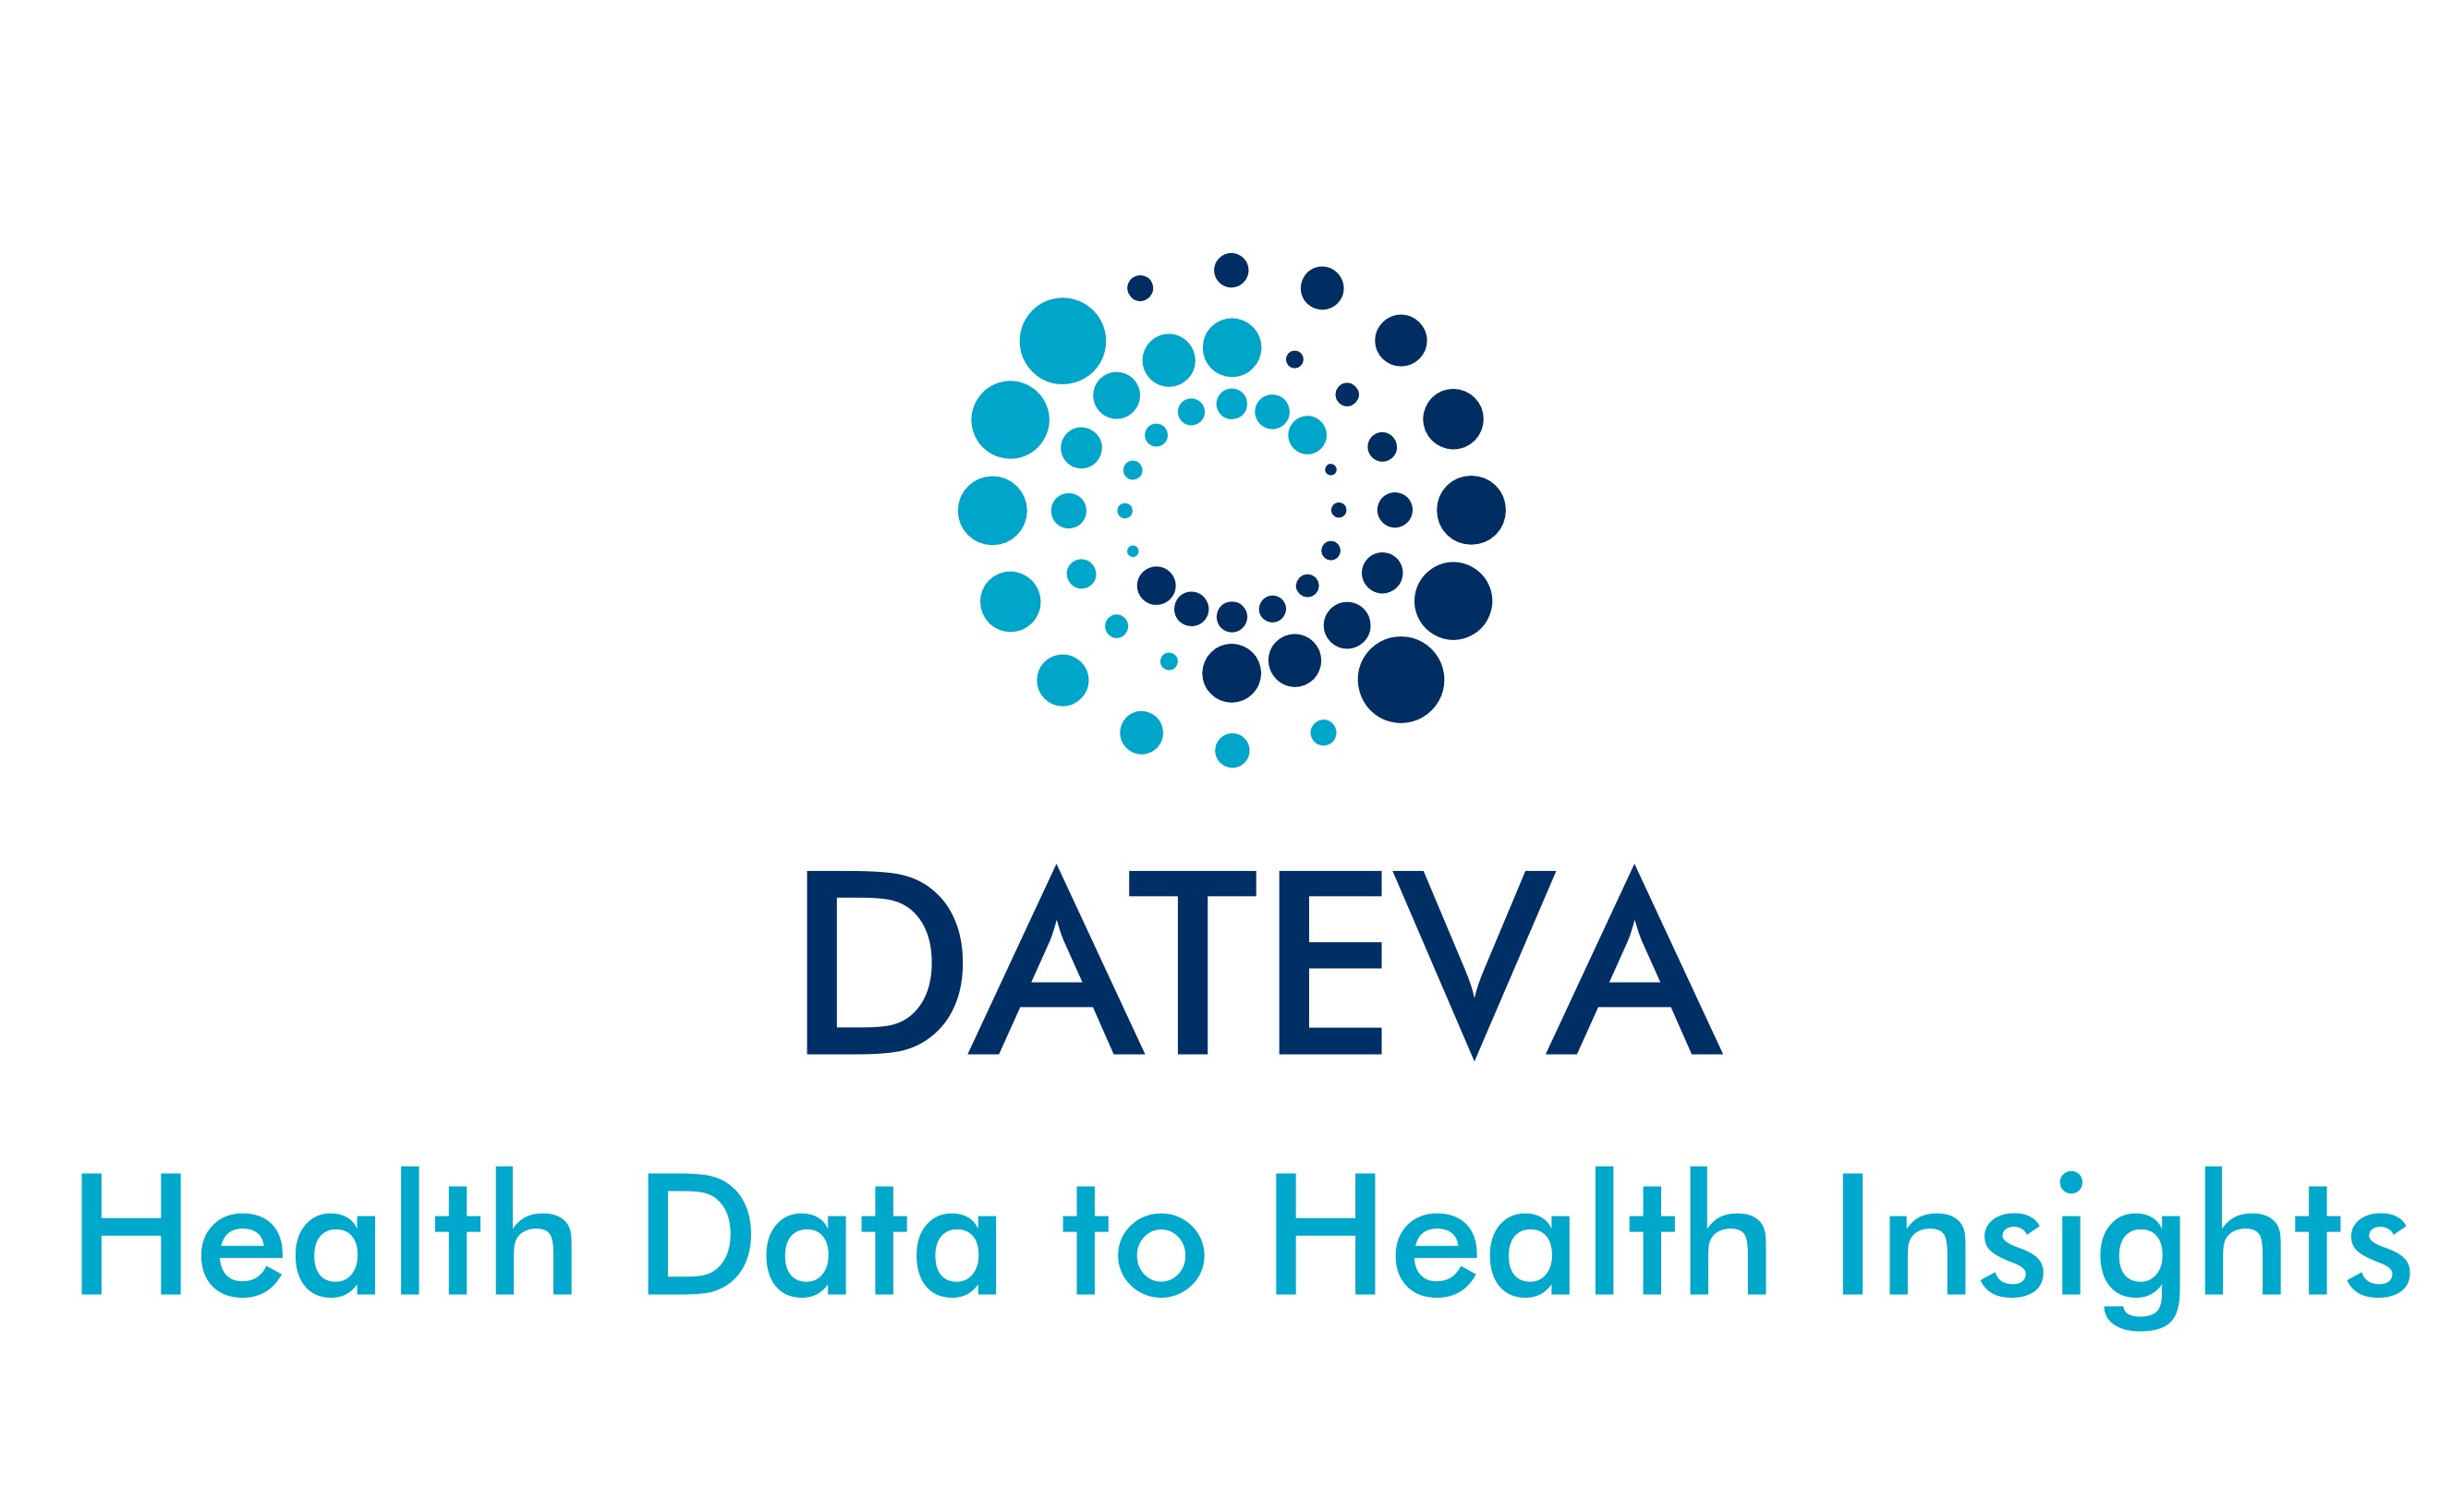 Dateva Logo: ''Health Data to Health Insights"